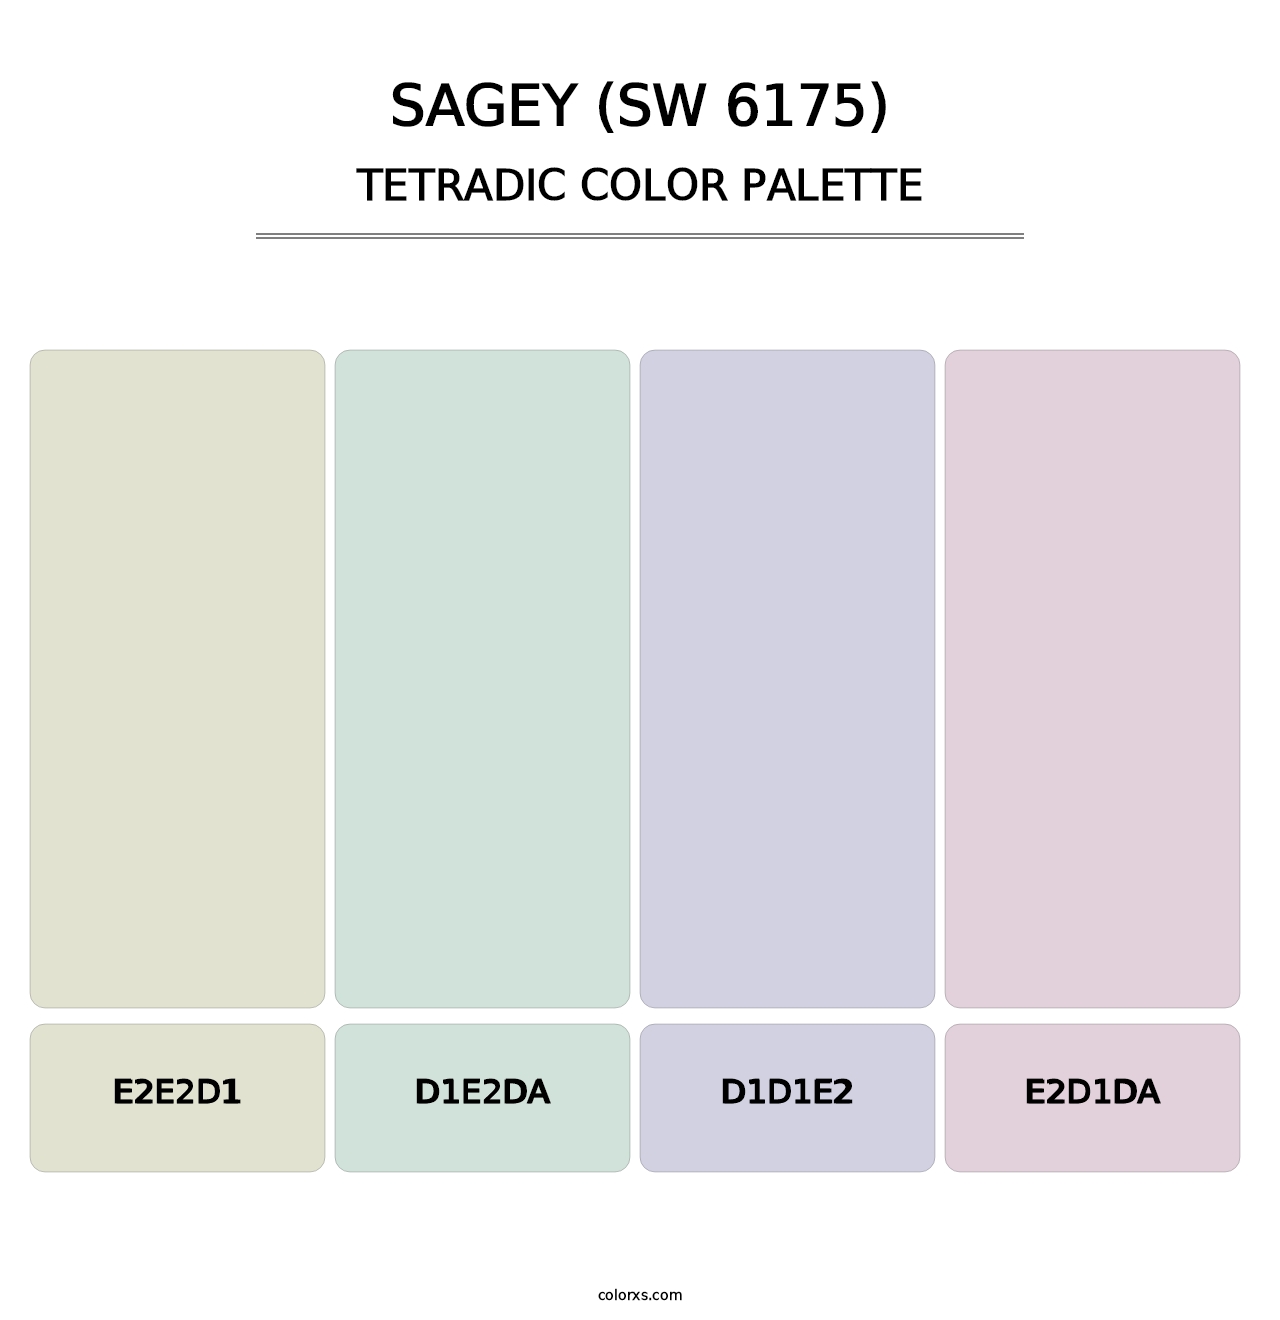 Sagey (SW 6175) - Tetradic Color Palette